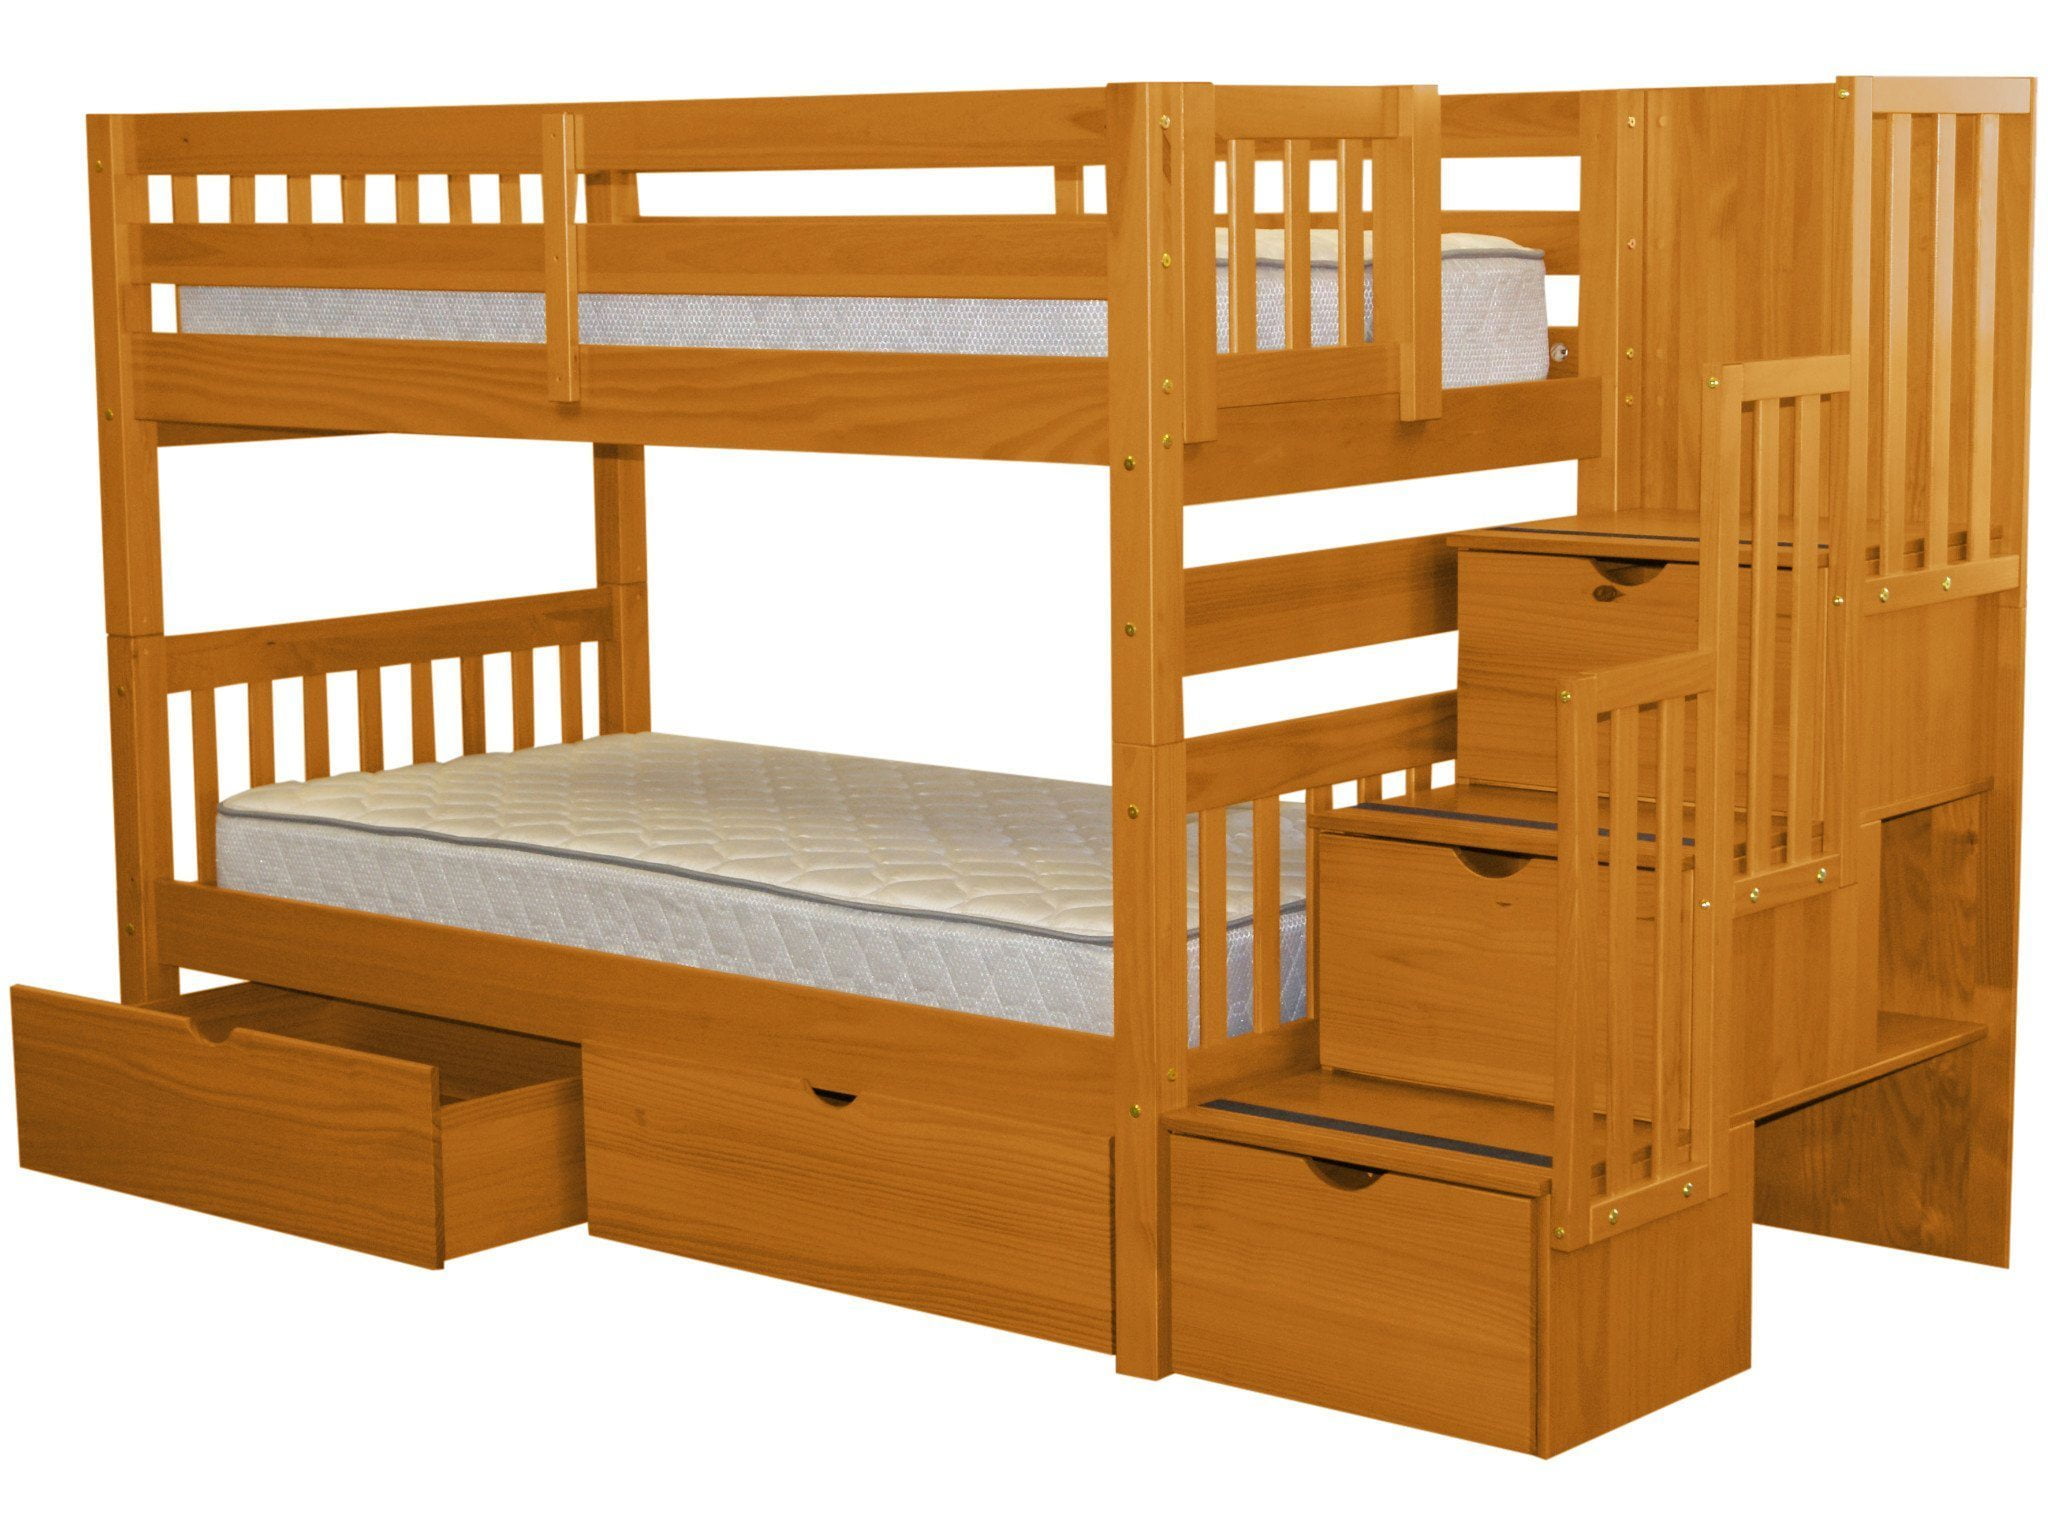 bedz king stairway bunk bed